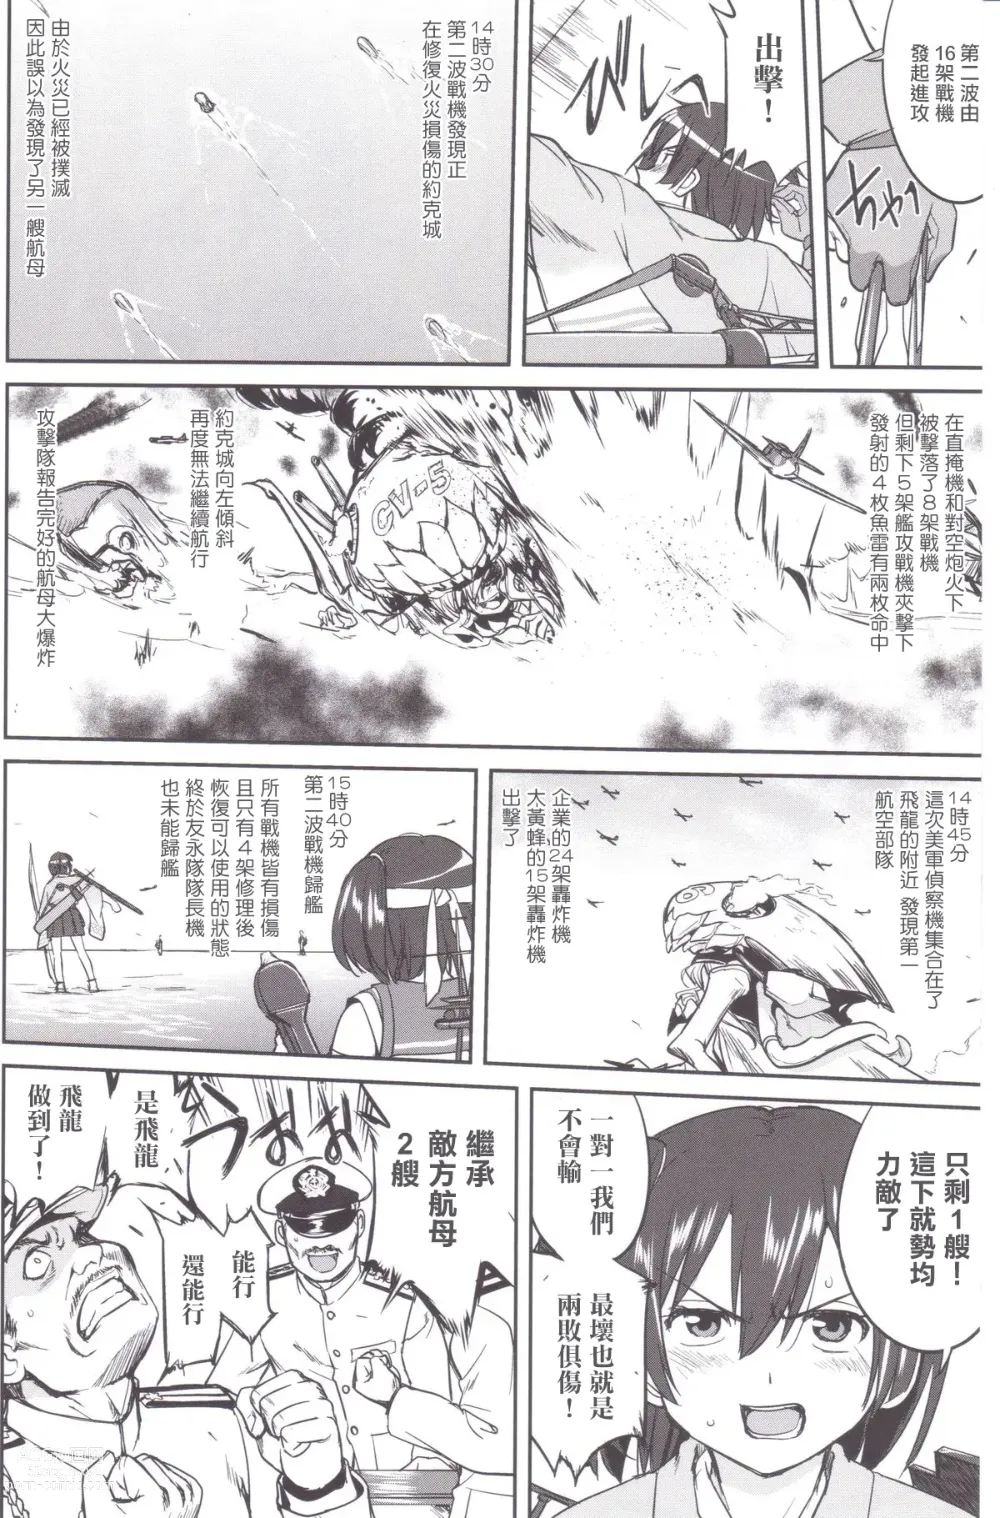 Page 49 of doujinshi Teitoku no Ketsudan MIDWAY